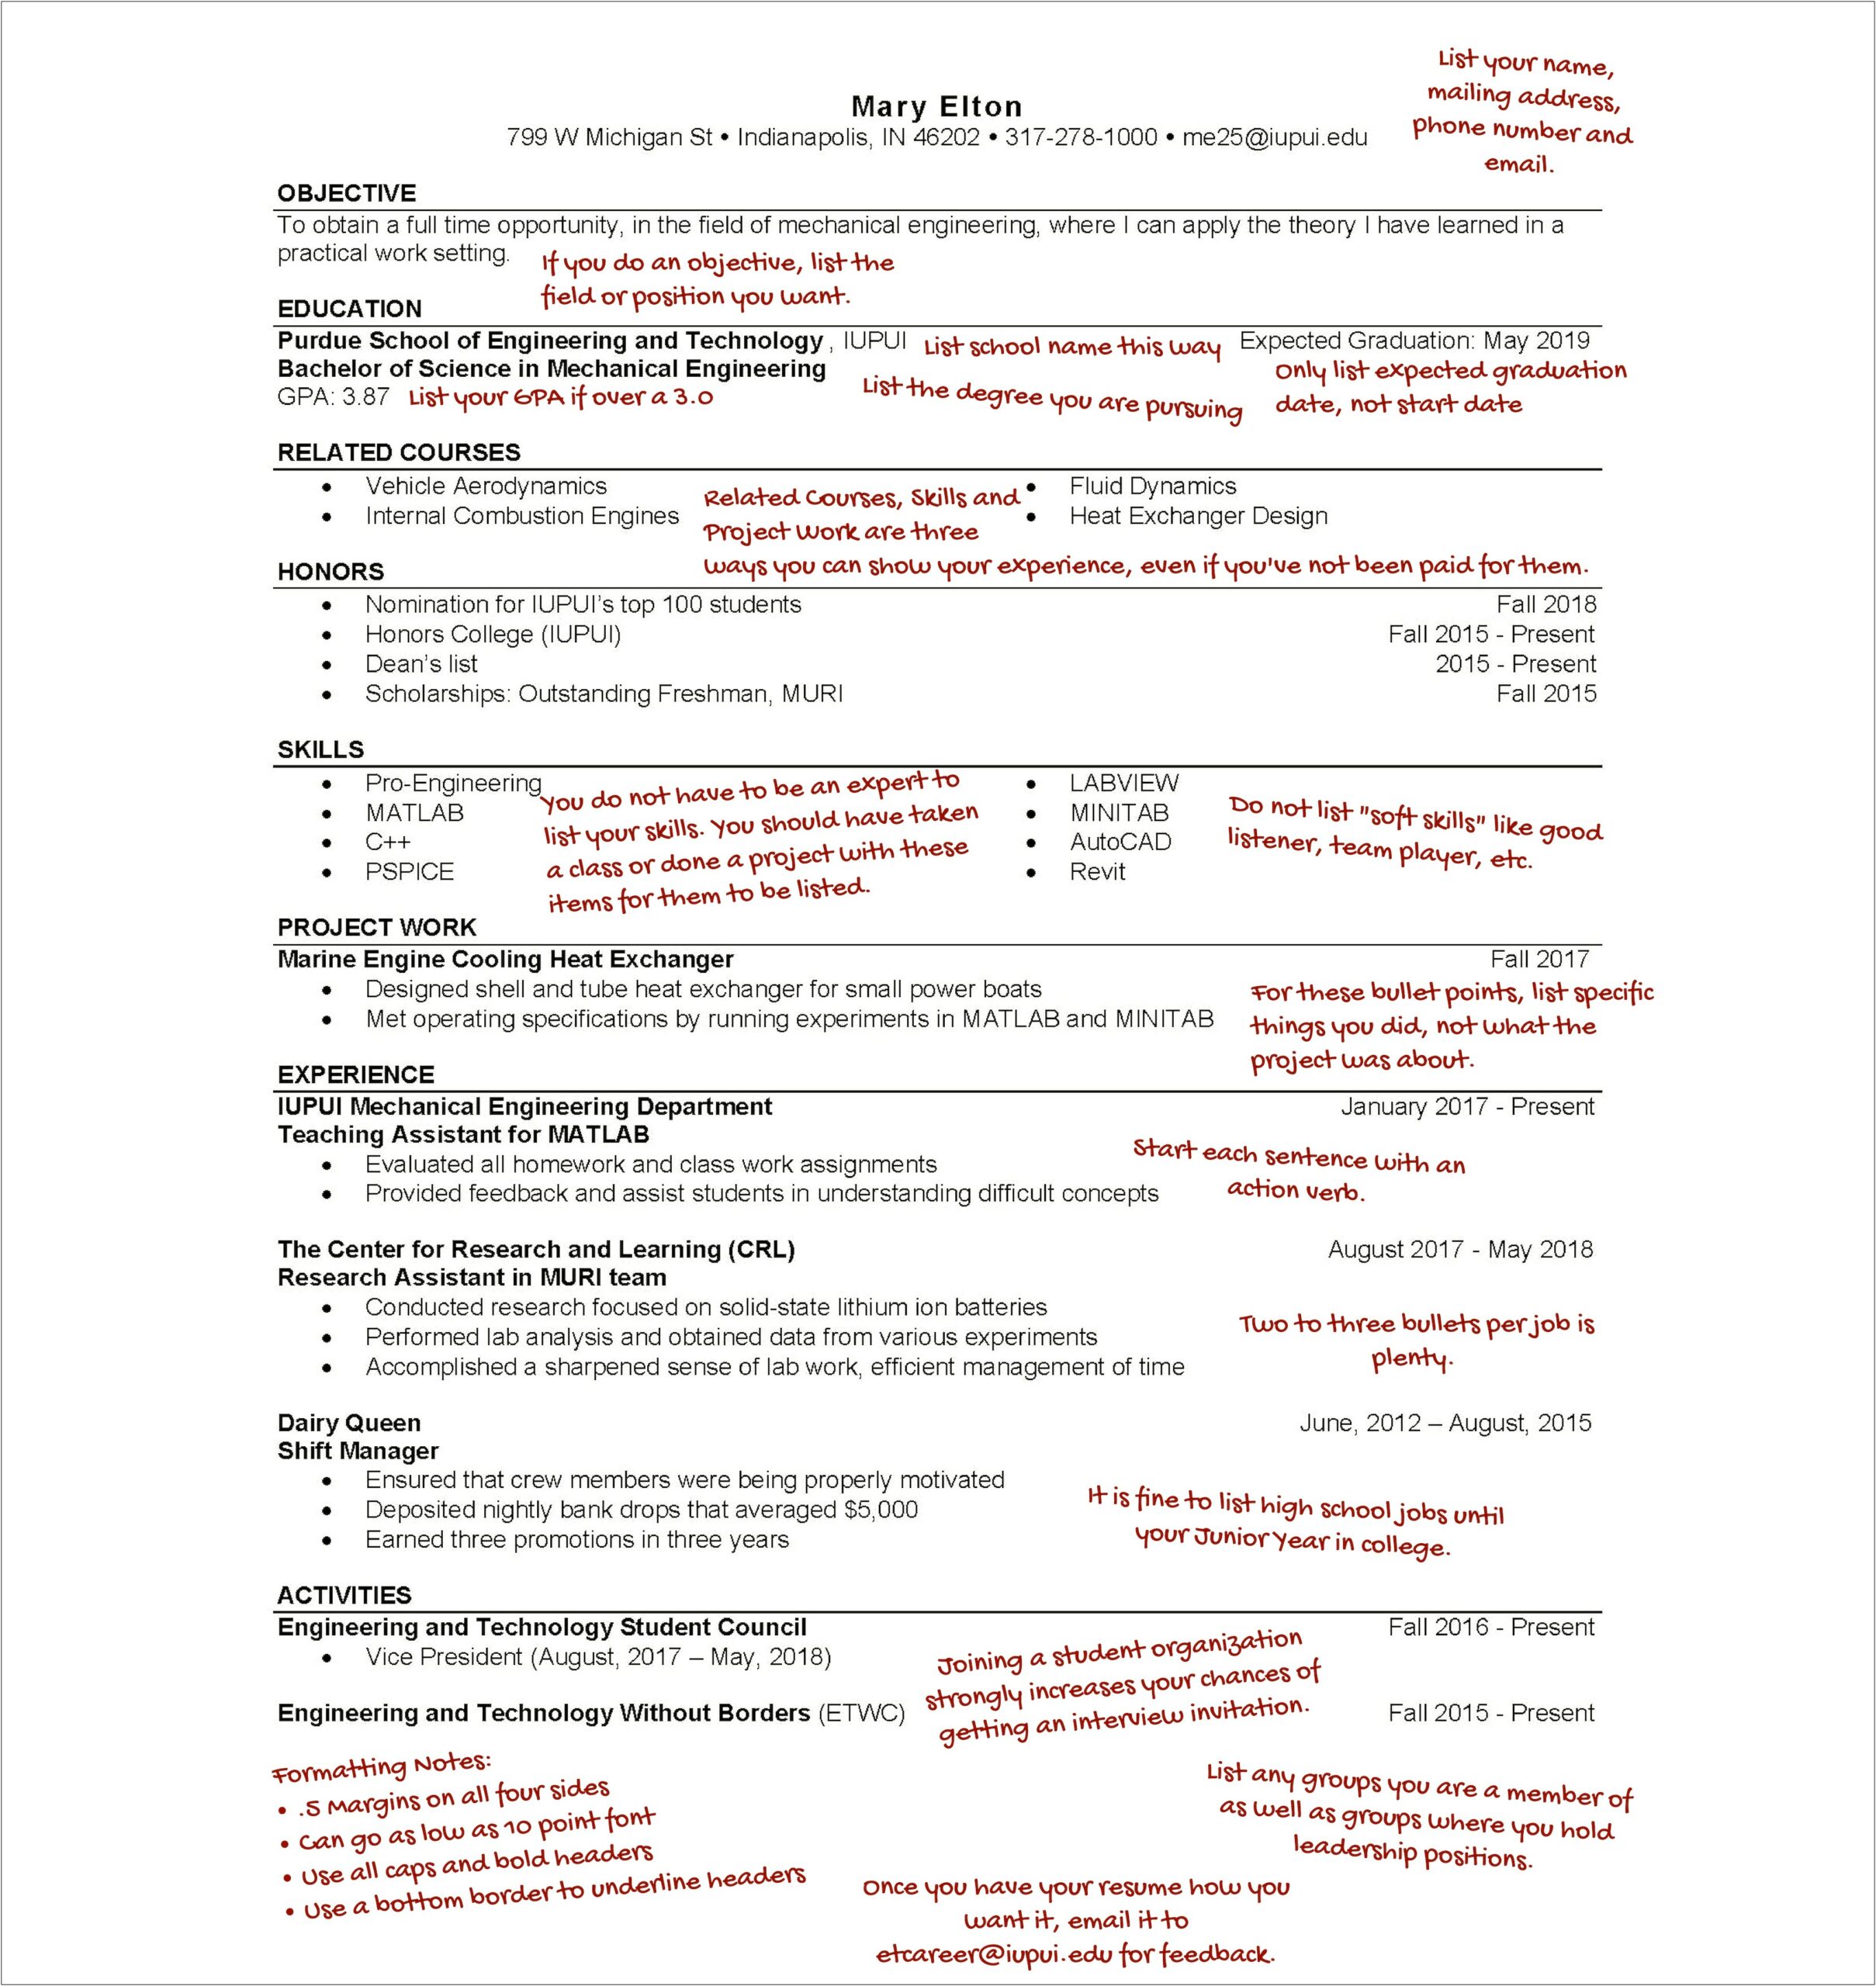 List Of Skills For Graduate School Resume